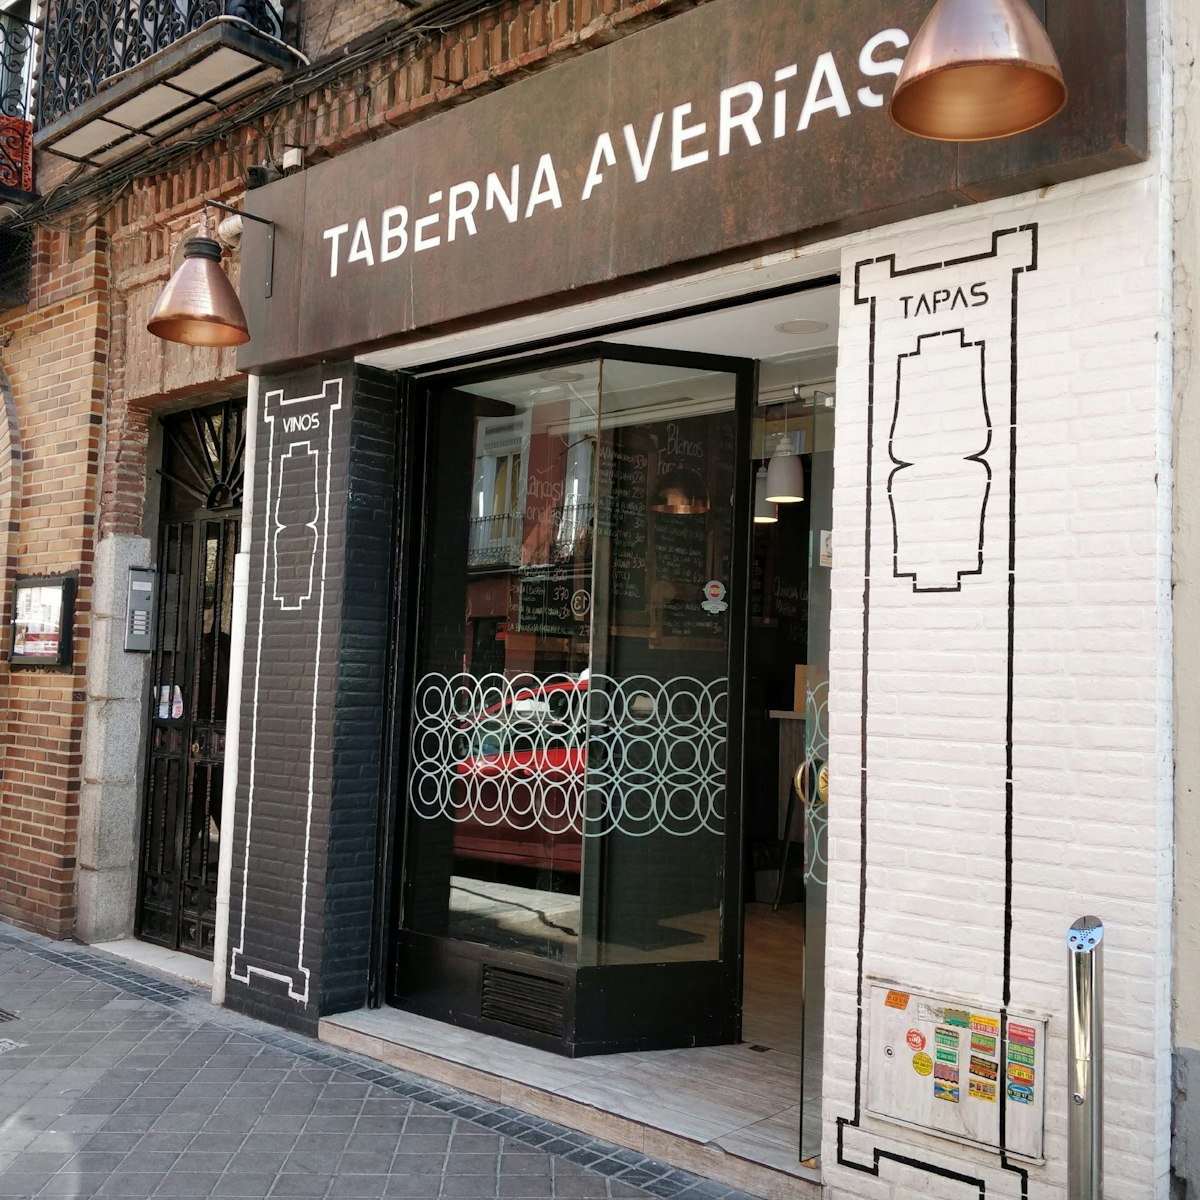 The entrance to Taberna Averías.